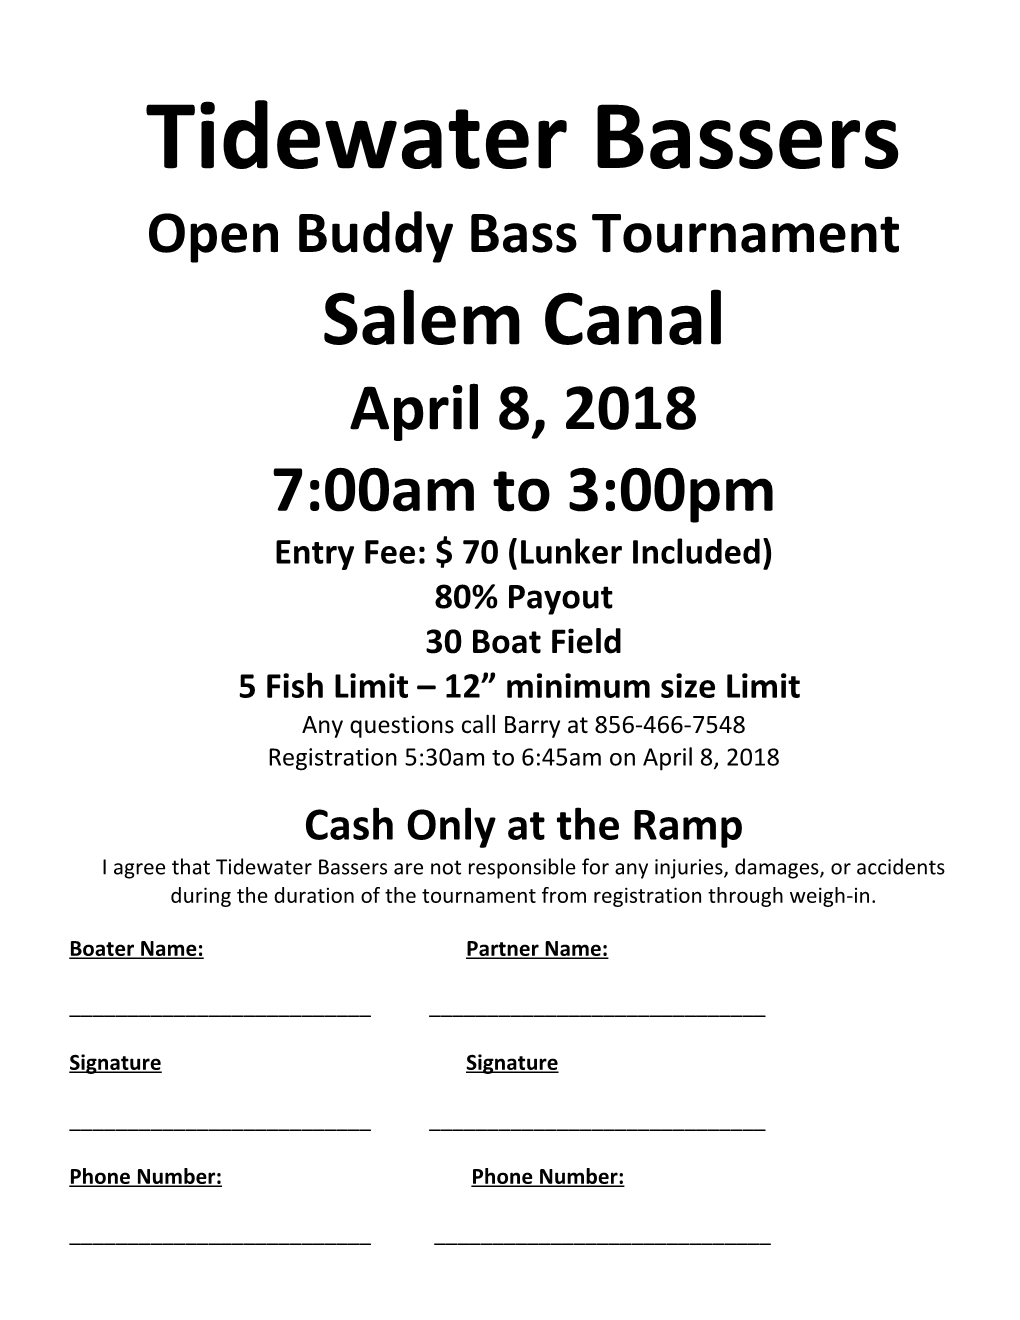 Open Buddy Bass Tournament